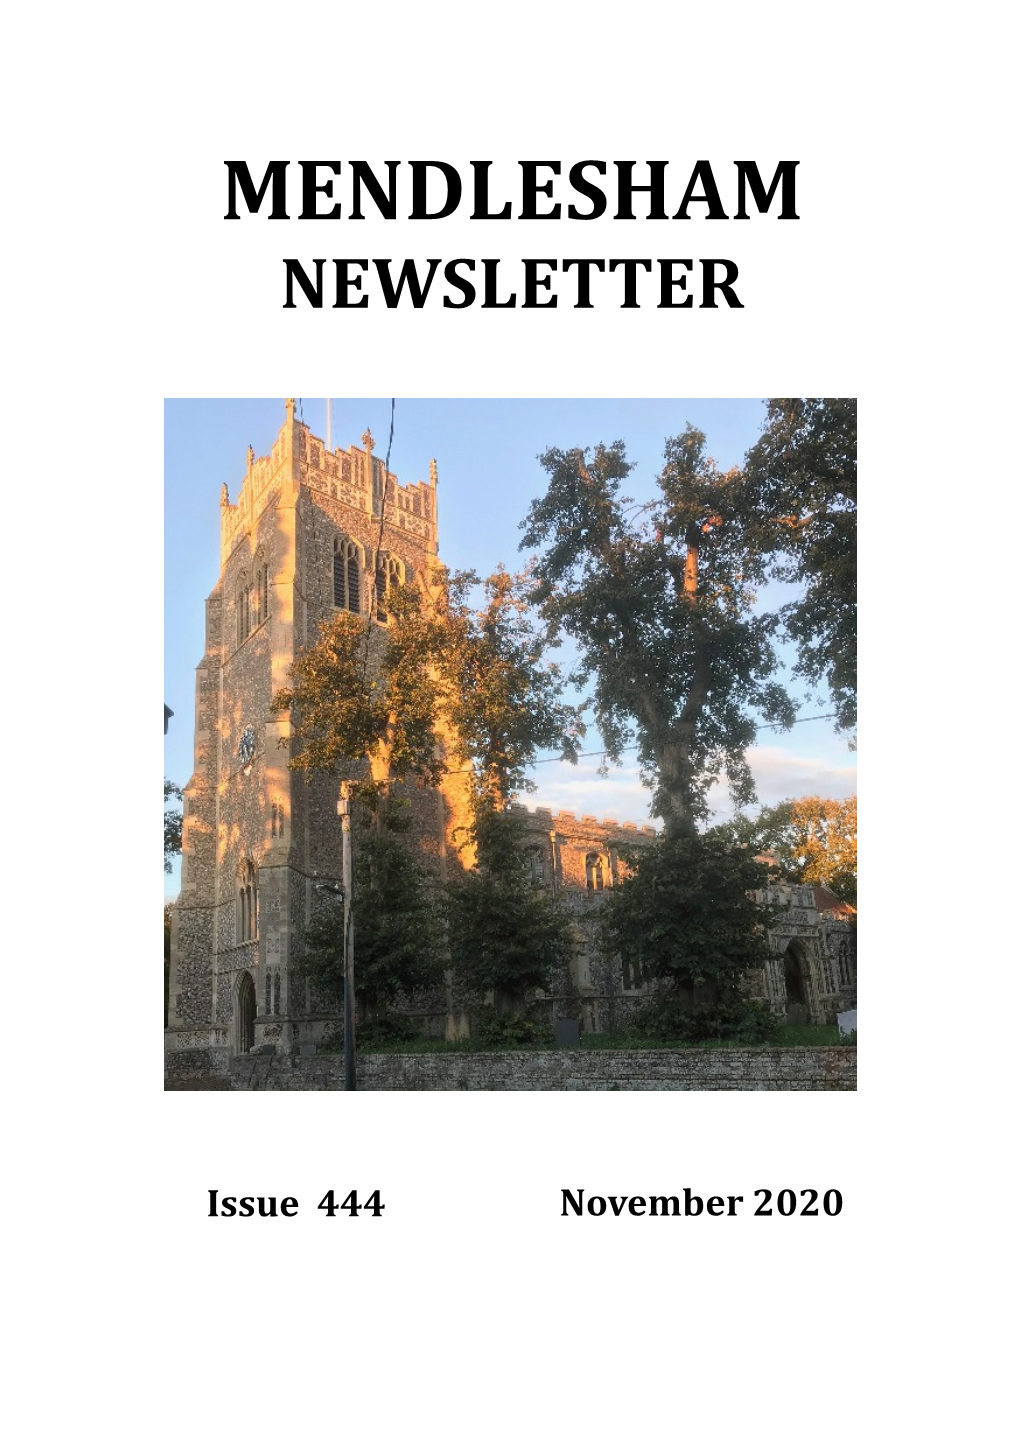 Mendlesham Newsletter November 2020